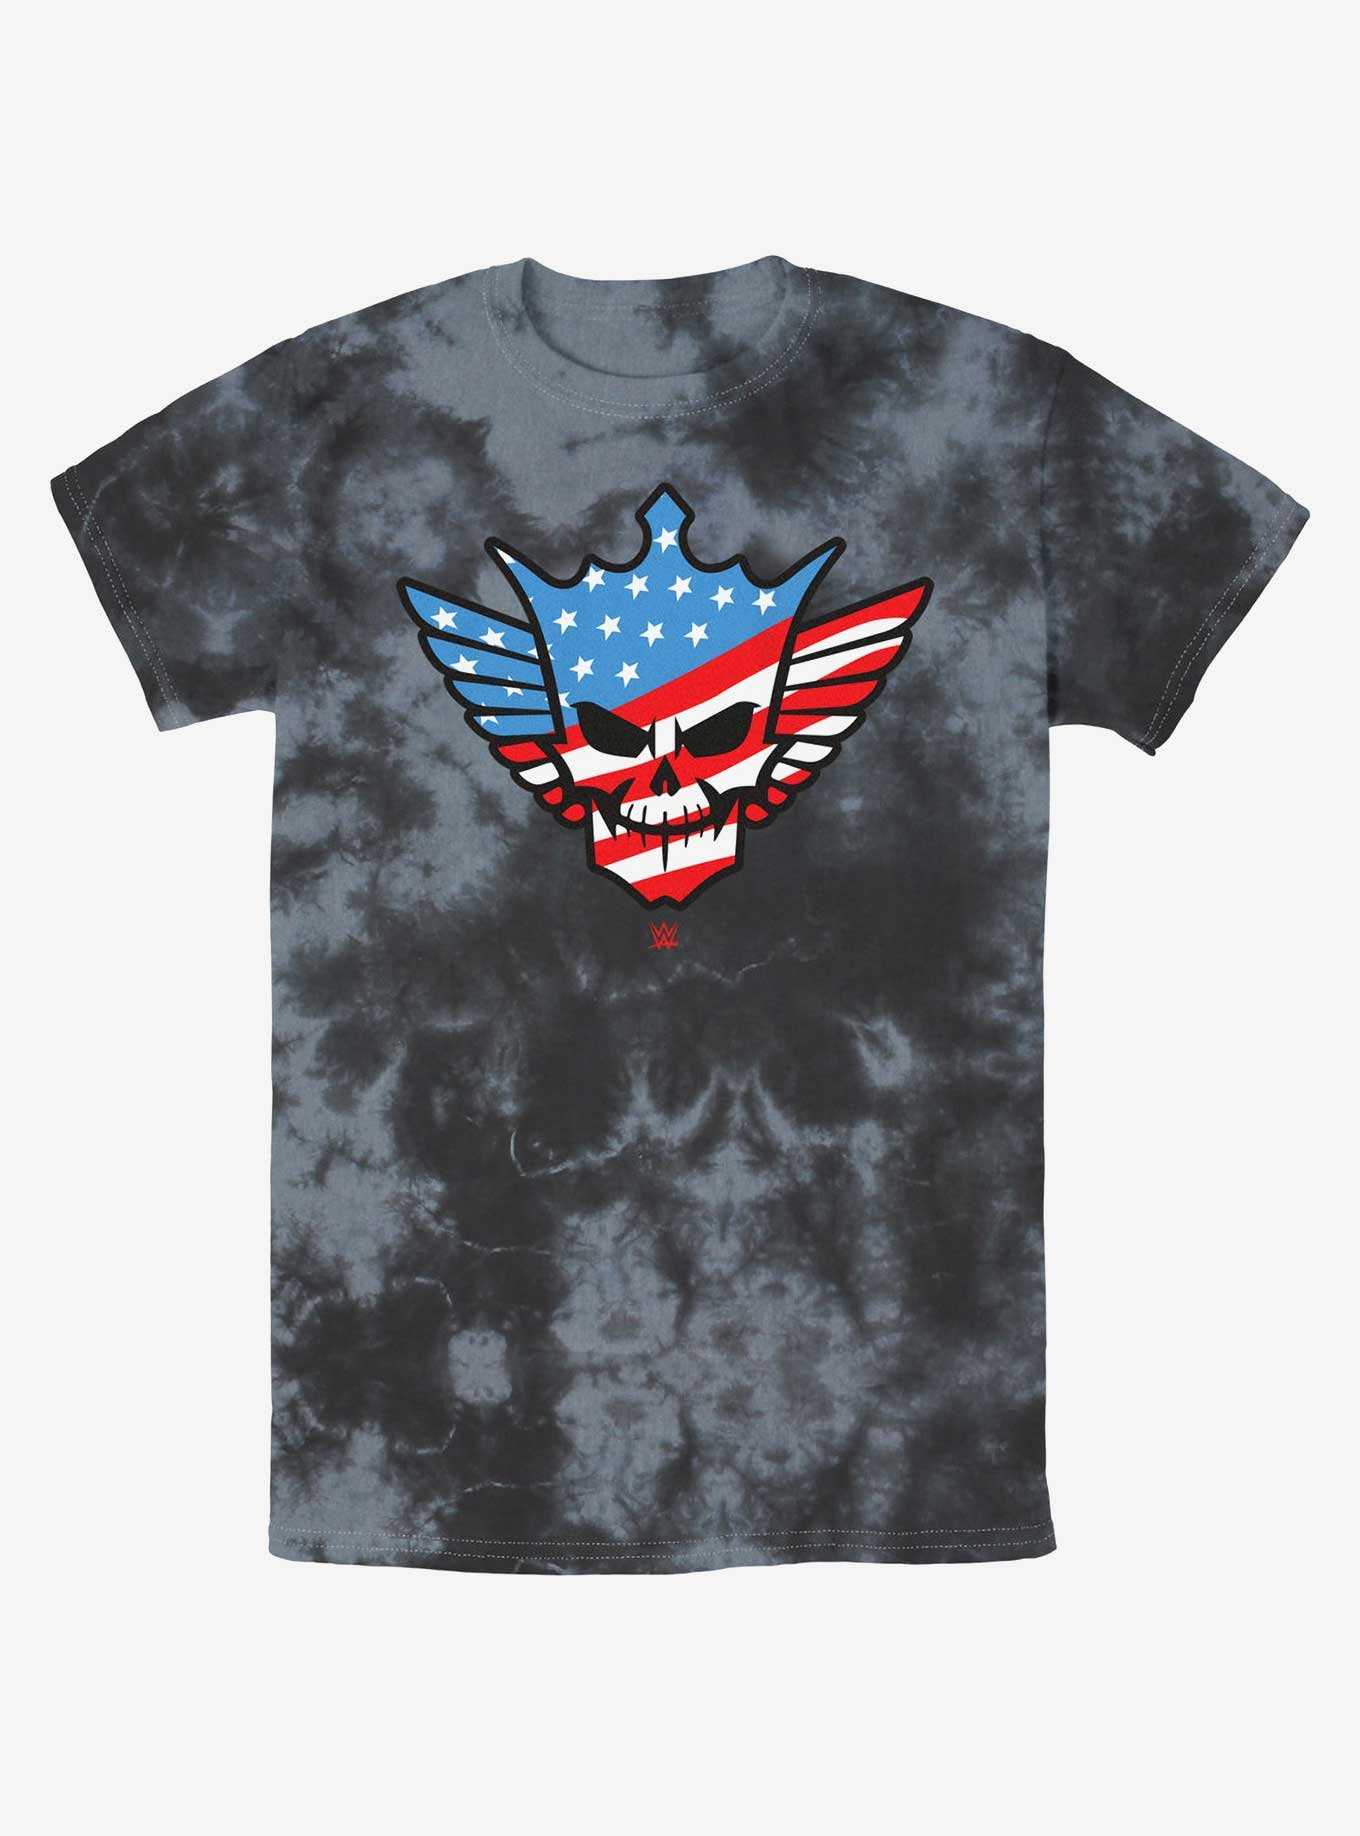 WWE Cody Rhodes American Nightmare Skull Tie-Dye T-Shirt, , hi-res